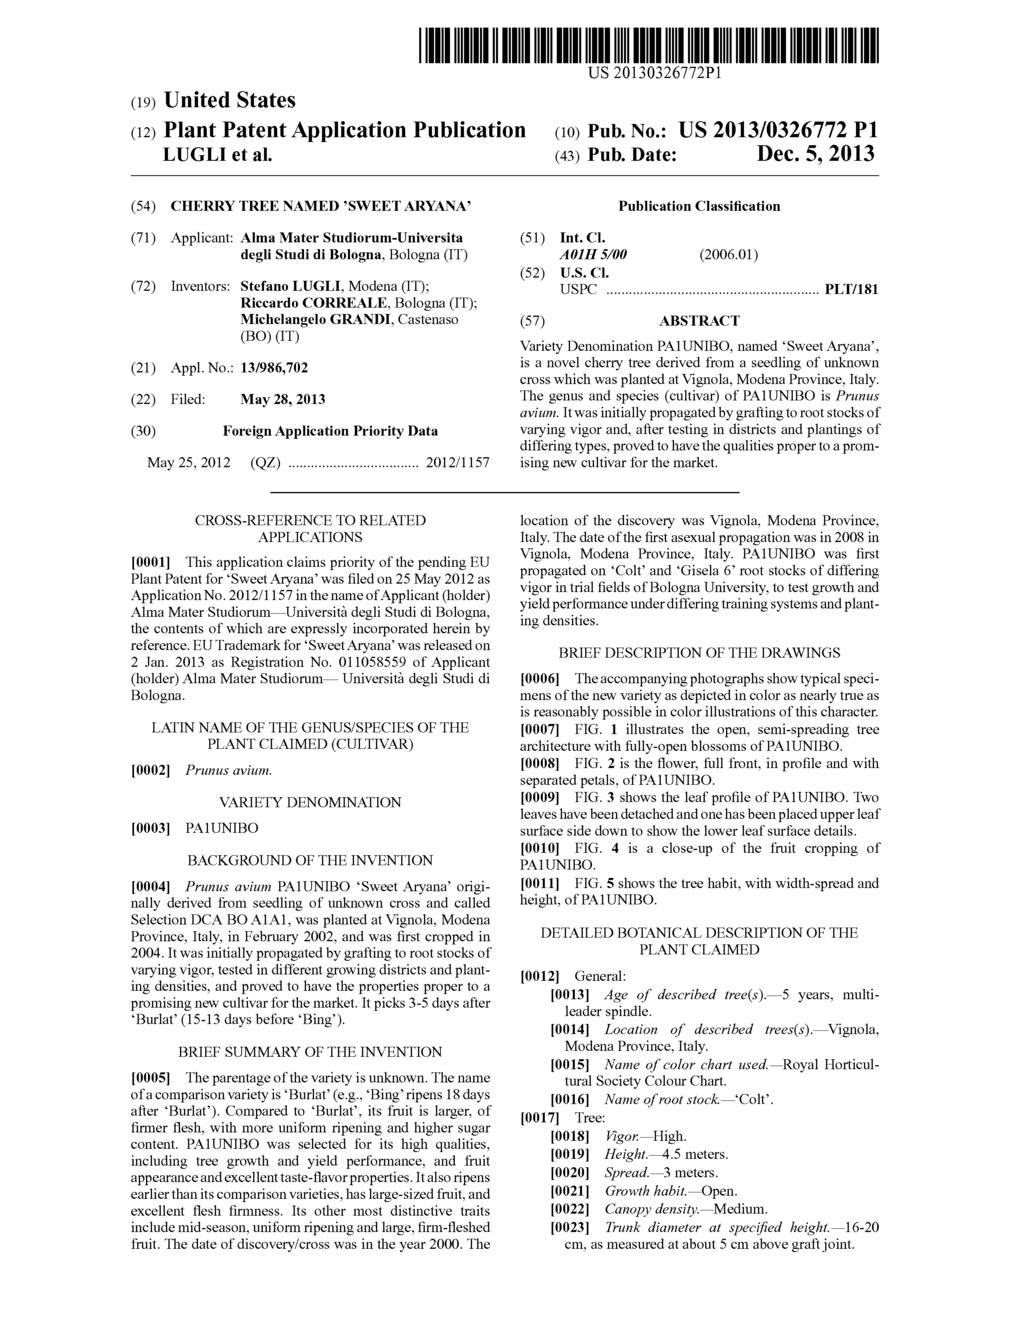 (19) United States (12) Plant Patent Application Publication LUGLI et al. US 2013 0326772P1 (10) Pub. No.: US 2013/0326772 P1 (43) Pub. Date: Dec.